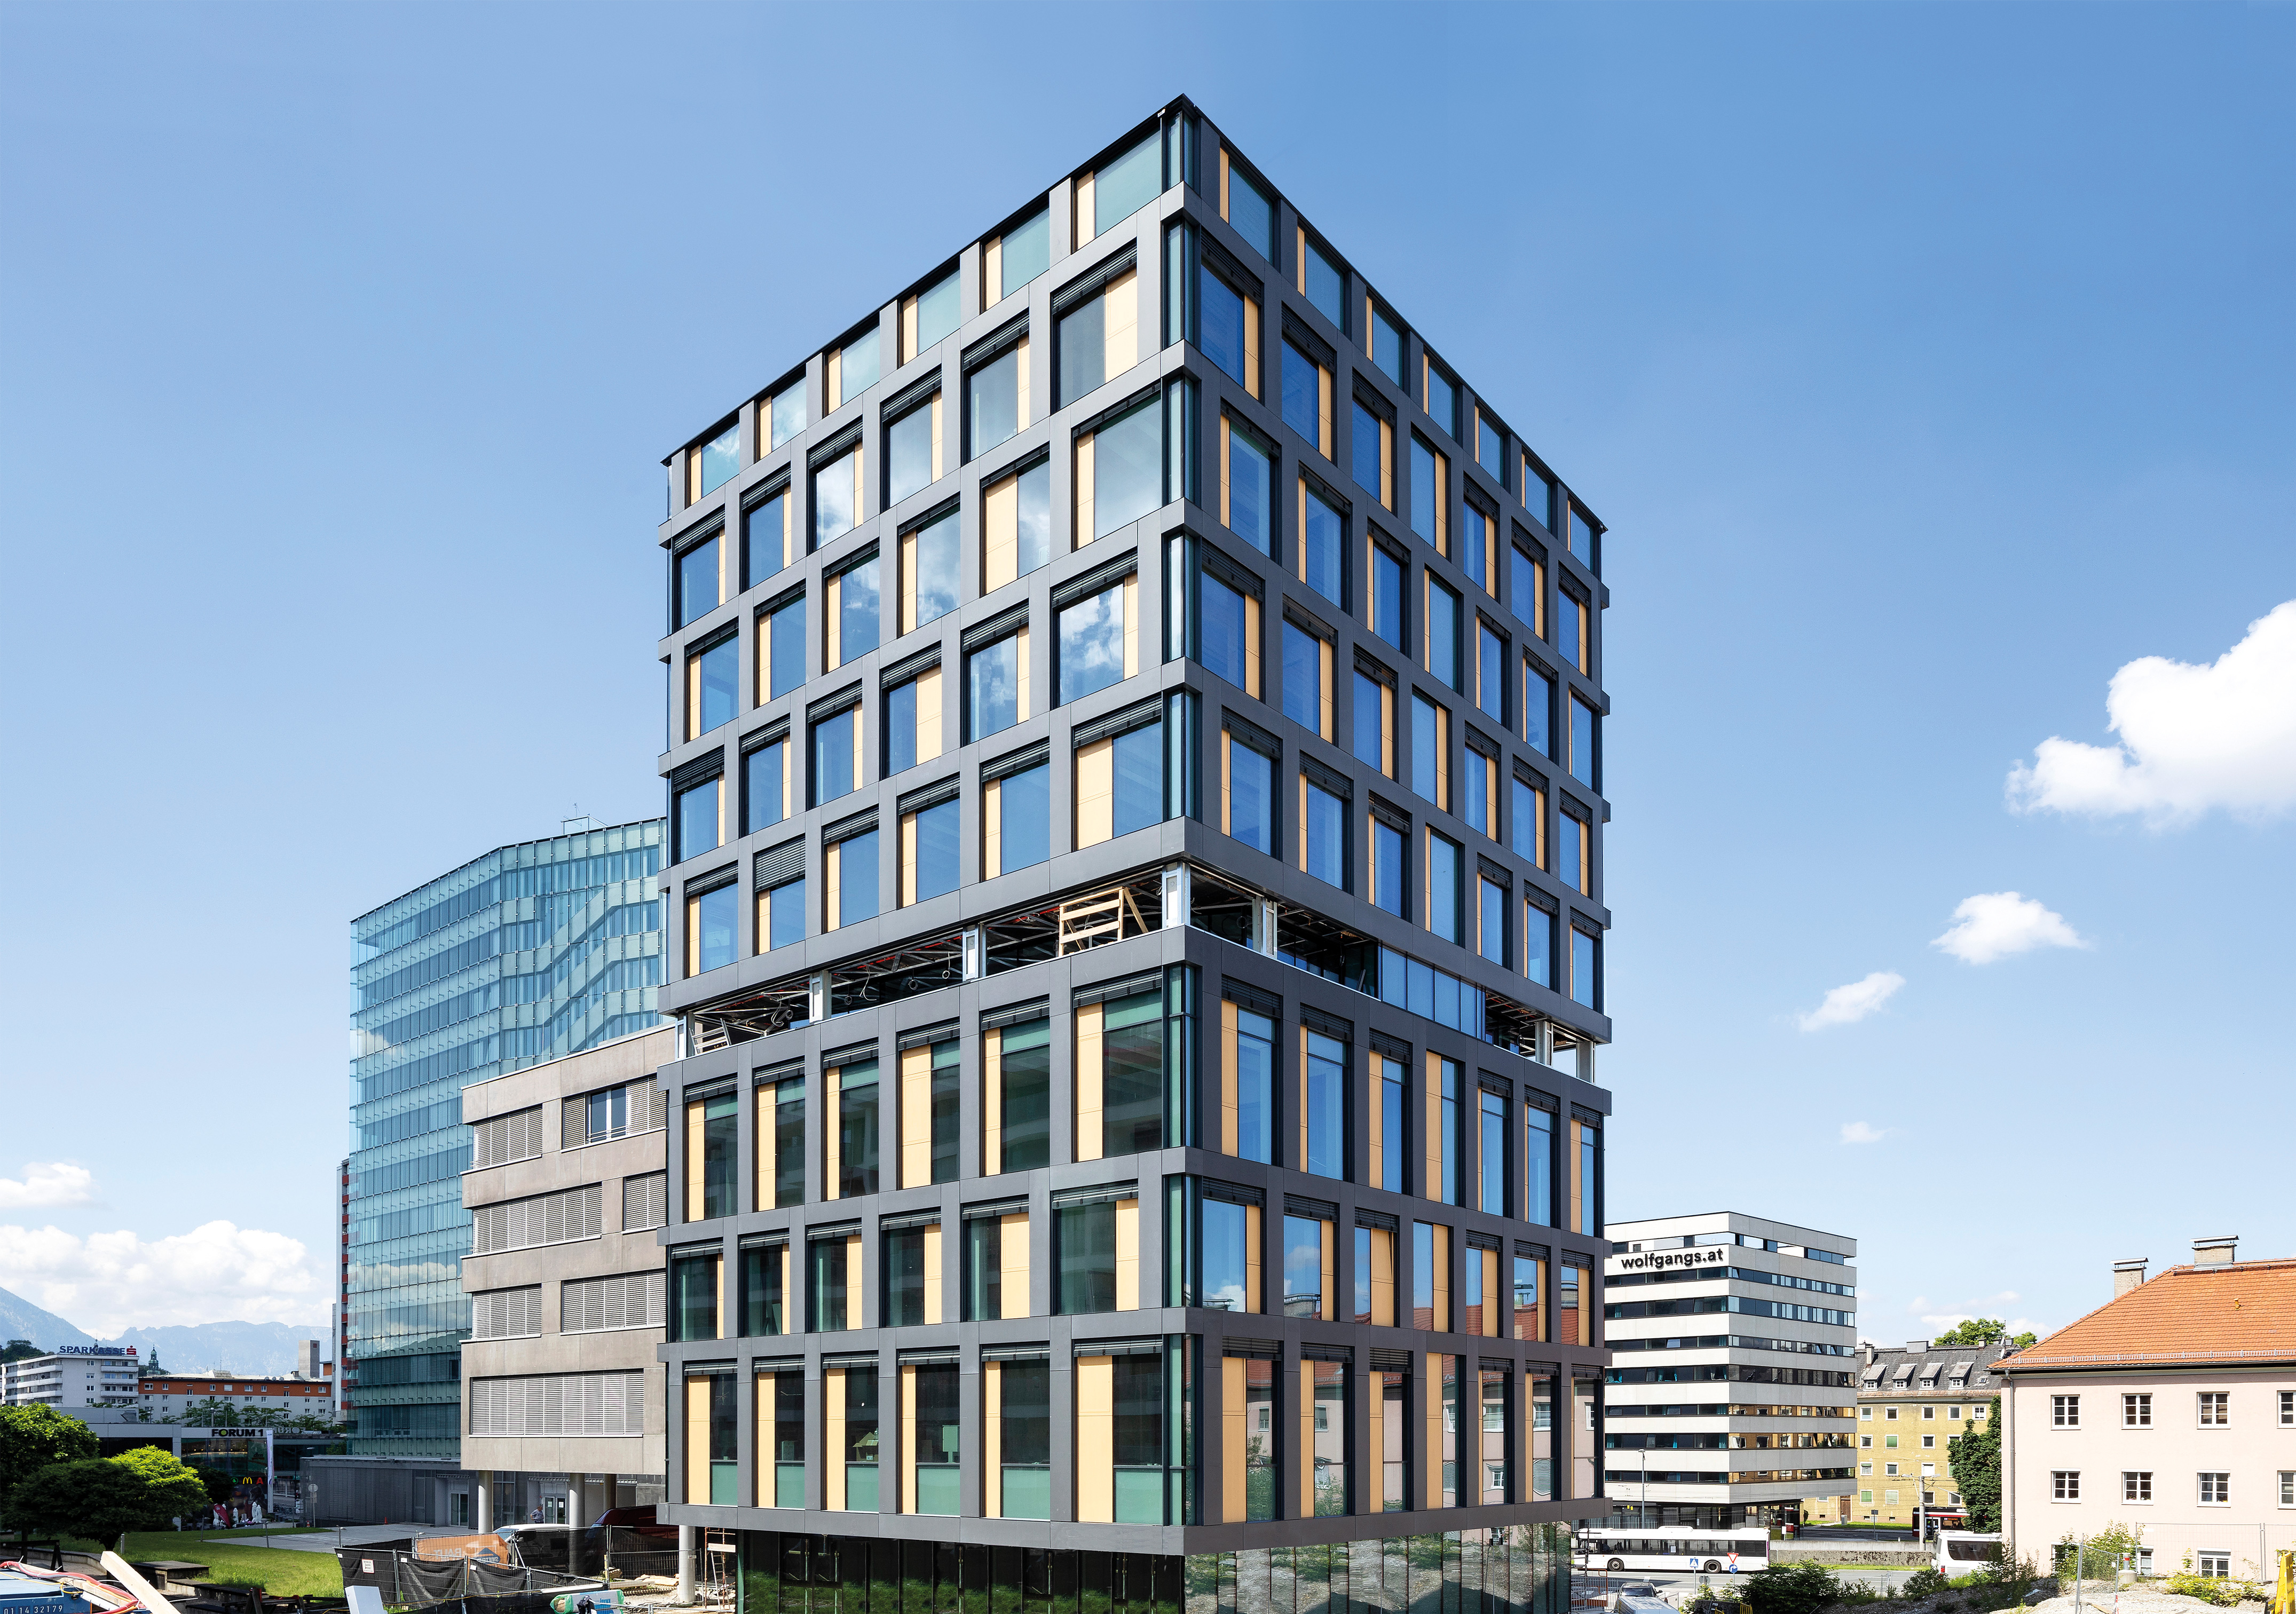 Bürogebäude der österreichischen Gesundheitskasse in Holz-/Hybridbauweise, Salzburg - Bygningskonstruksjon